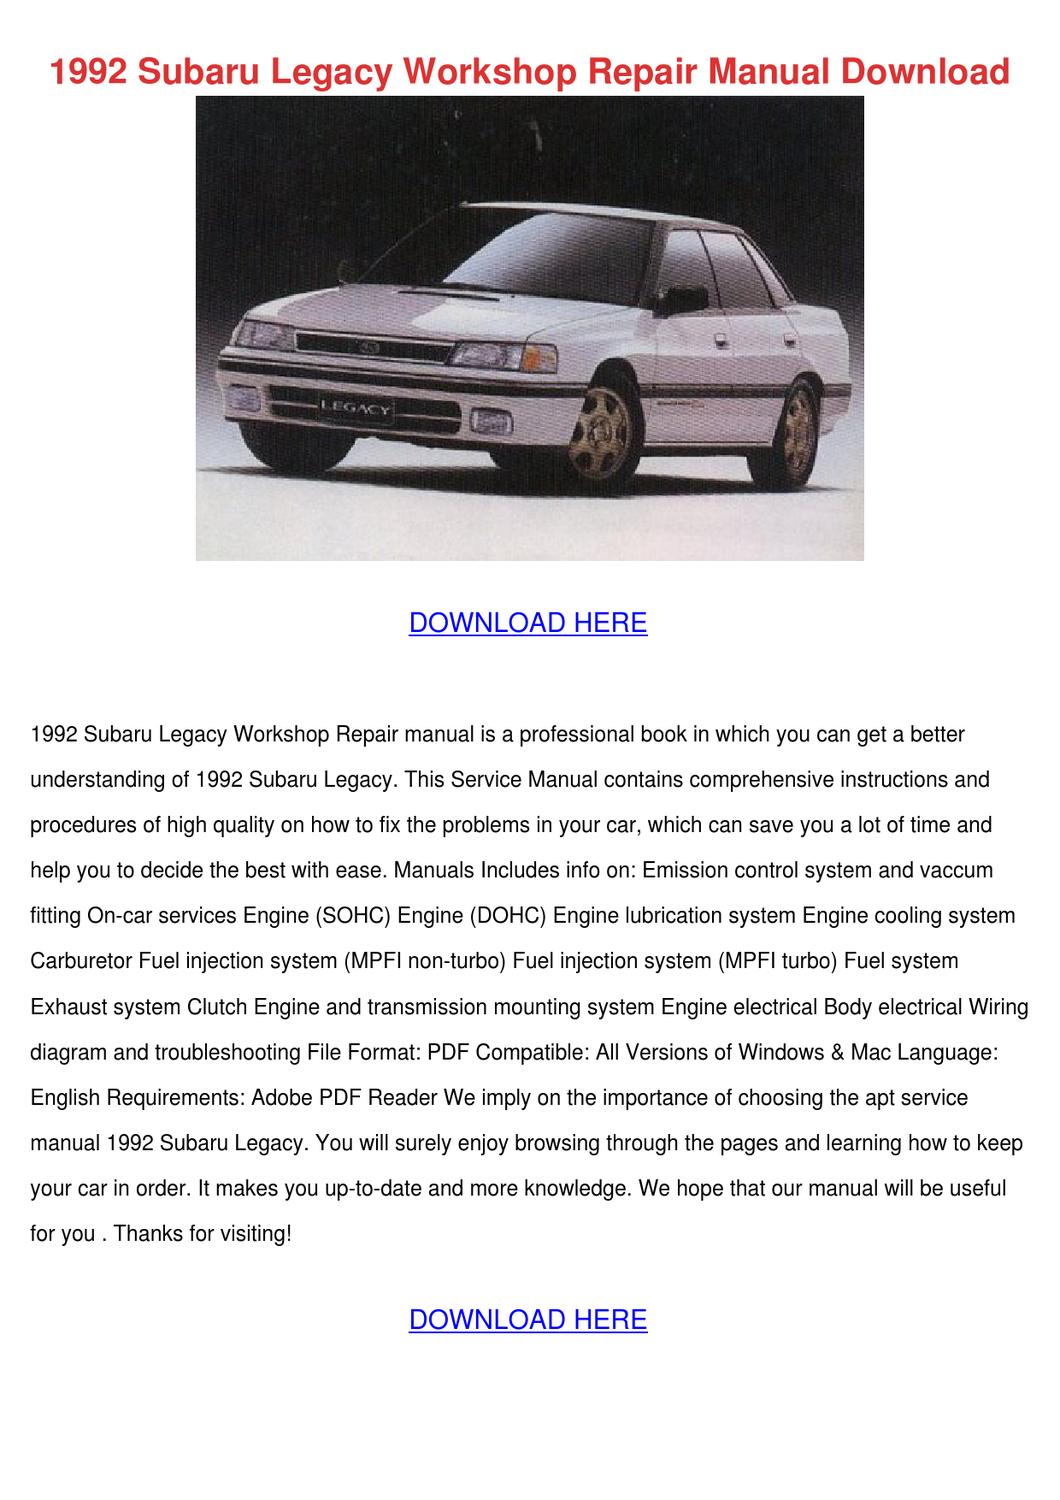 1992 subaru legacy repair manual pdf